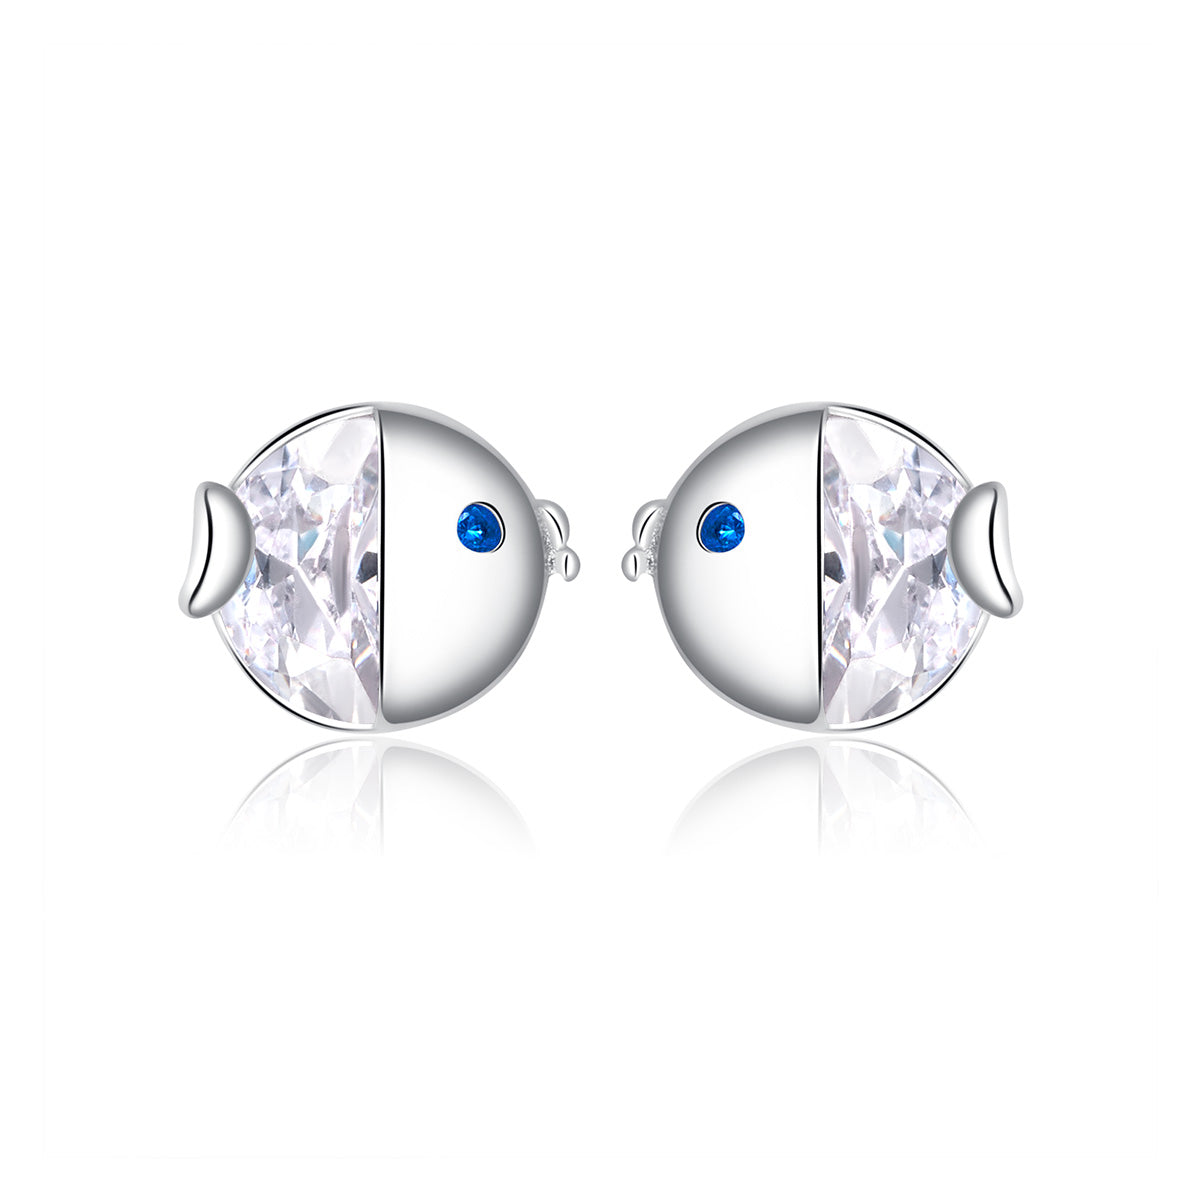 Kiss fish earrings, 92.5% Sterling Silver, Zircon ear stud